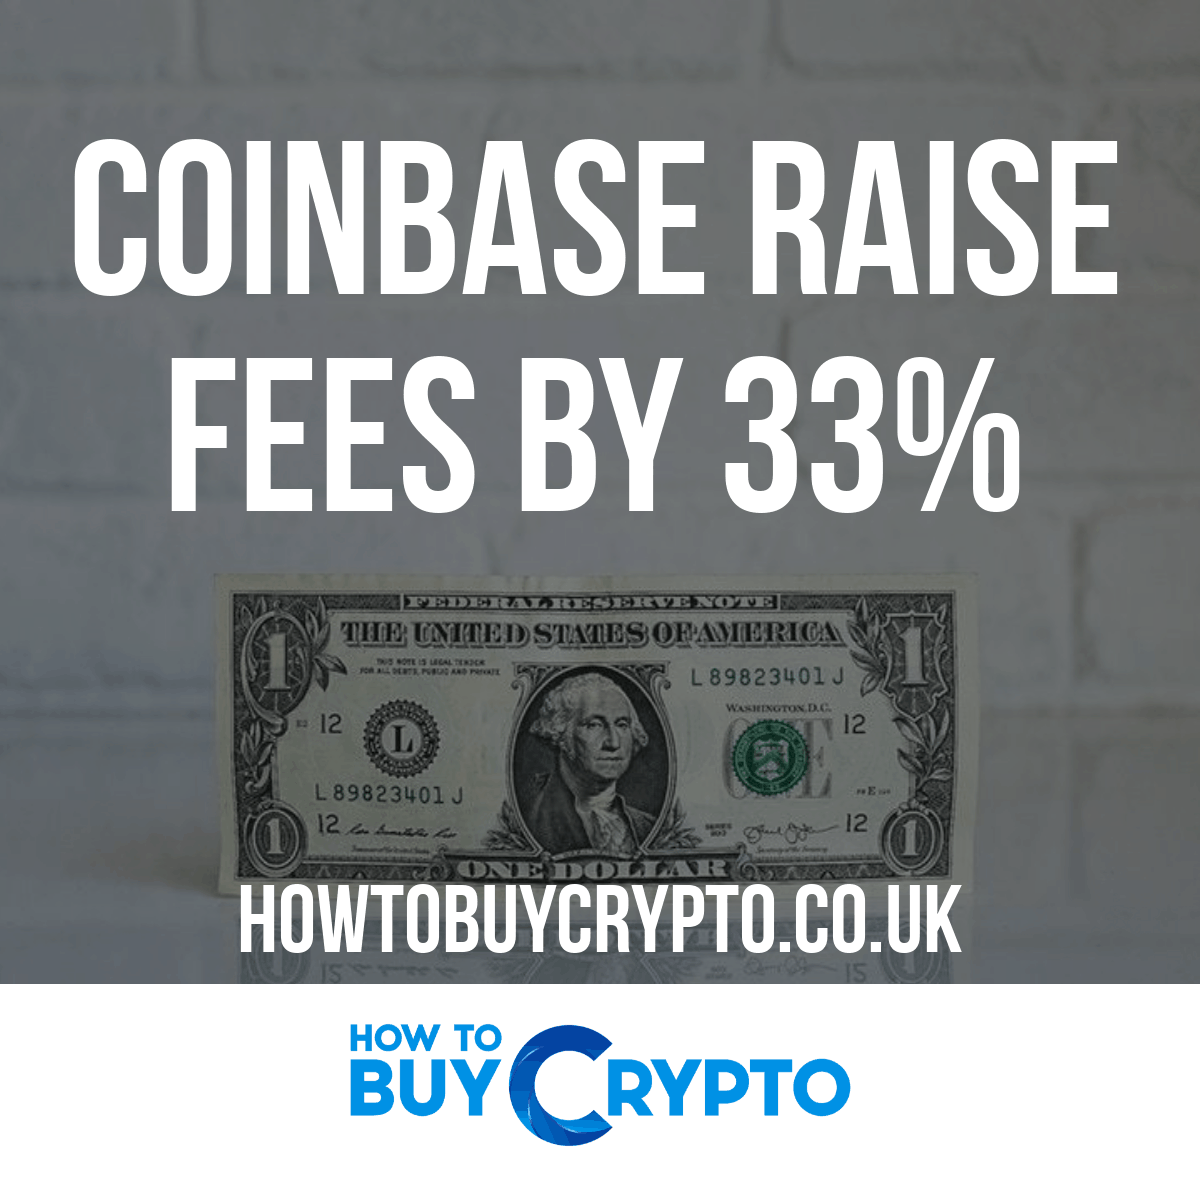 Coinbase Raise Fees